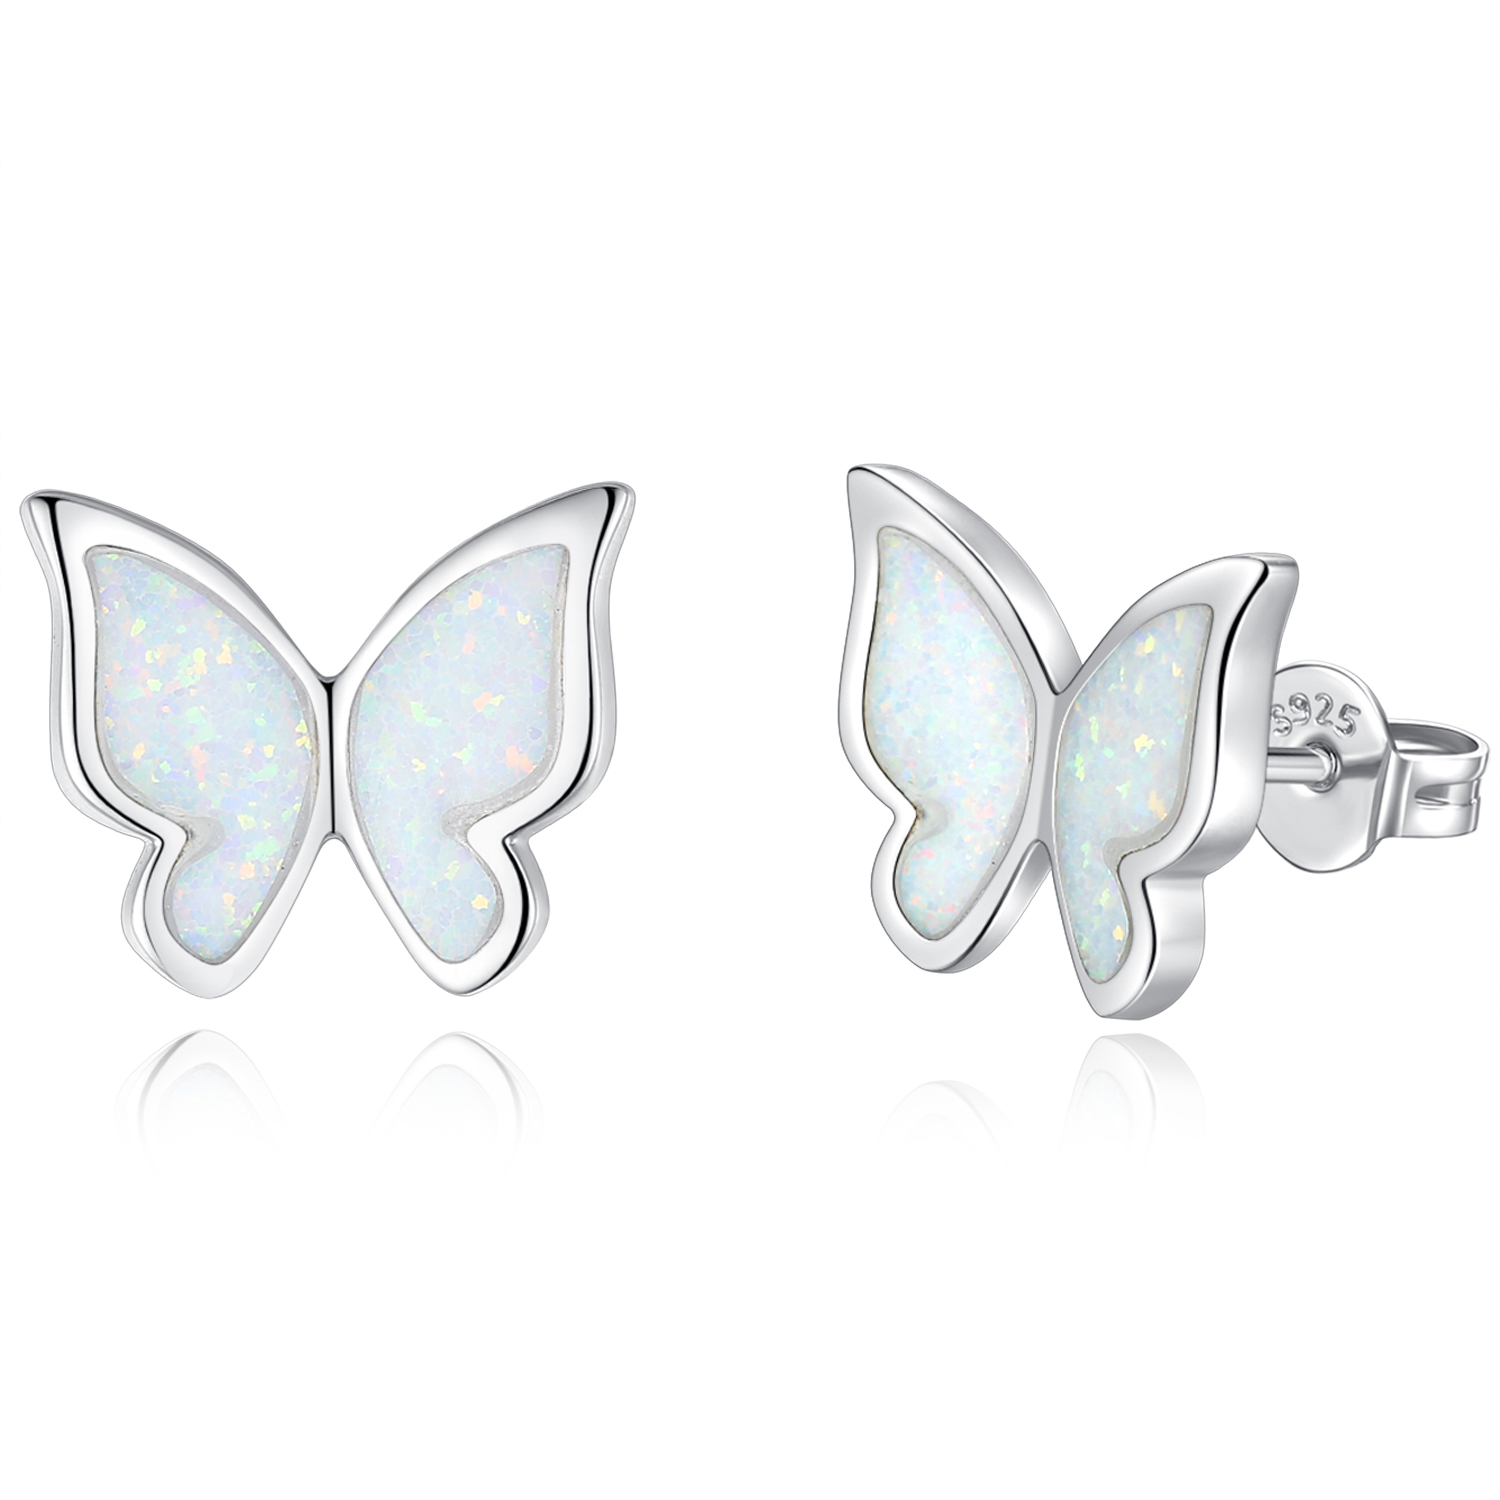 Merryshine Jewelry S925 Sterling Silver Rhodium Plated Opal Butterfly Earring Elegant Earrings For Women